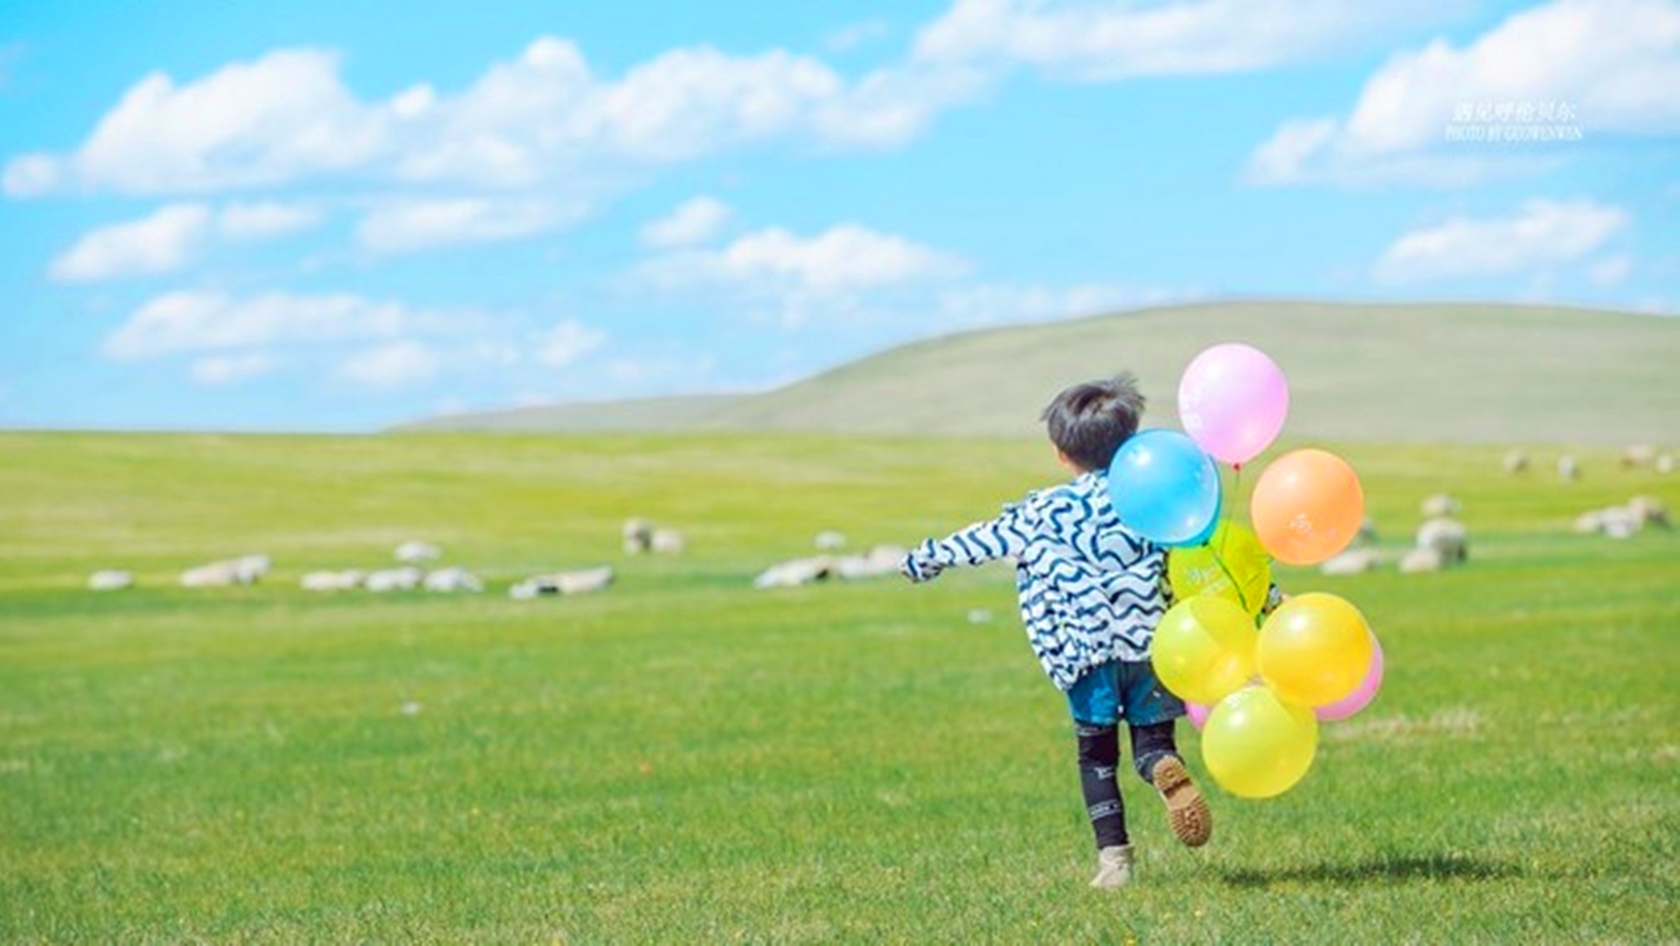 广州研学旅行公司、酷爸团2019 | 暑假草原 | 和孩子一起撒欢在辽阔的呼伦贝尔大草原上-童游-亲子童游看世界·总有更好的亲子游